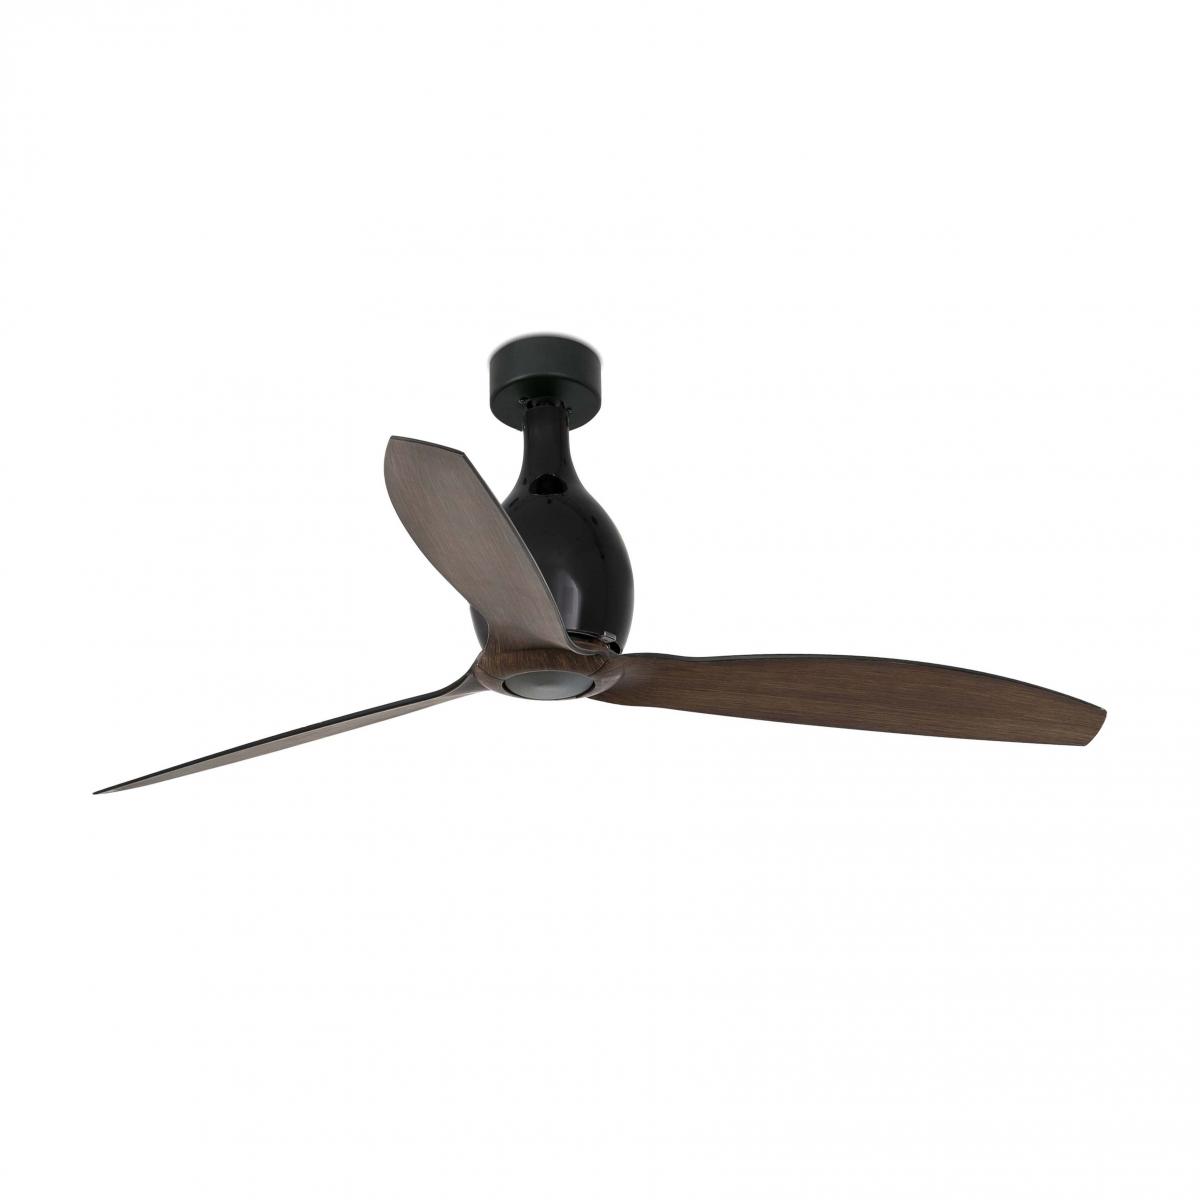 Матово-черный / деревянный потолочный вентилятор Mini Eterfan